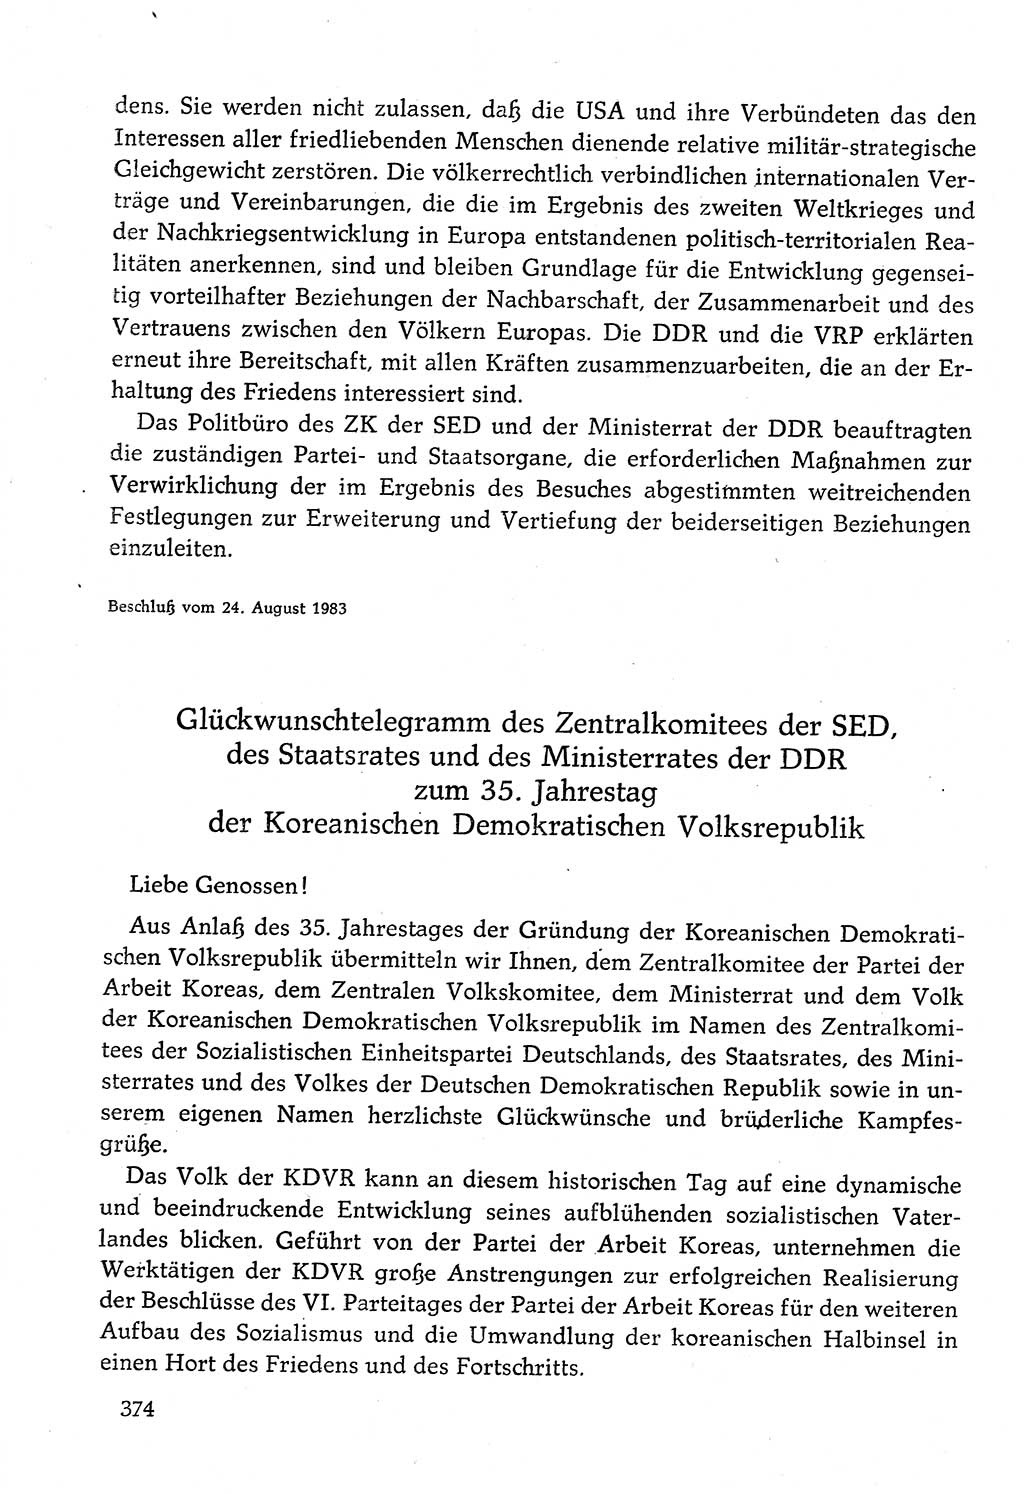 Dokumente der Sozialistischen Einheitspartei Deutschlands (SED) [Deutsche Demokratische Republik (DDR)] 1982-1983, Seite 374 (Dok. SED DDR 1982-1983, S. 374)